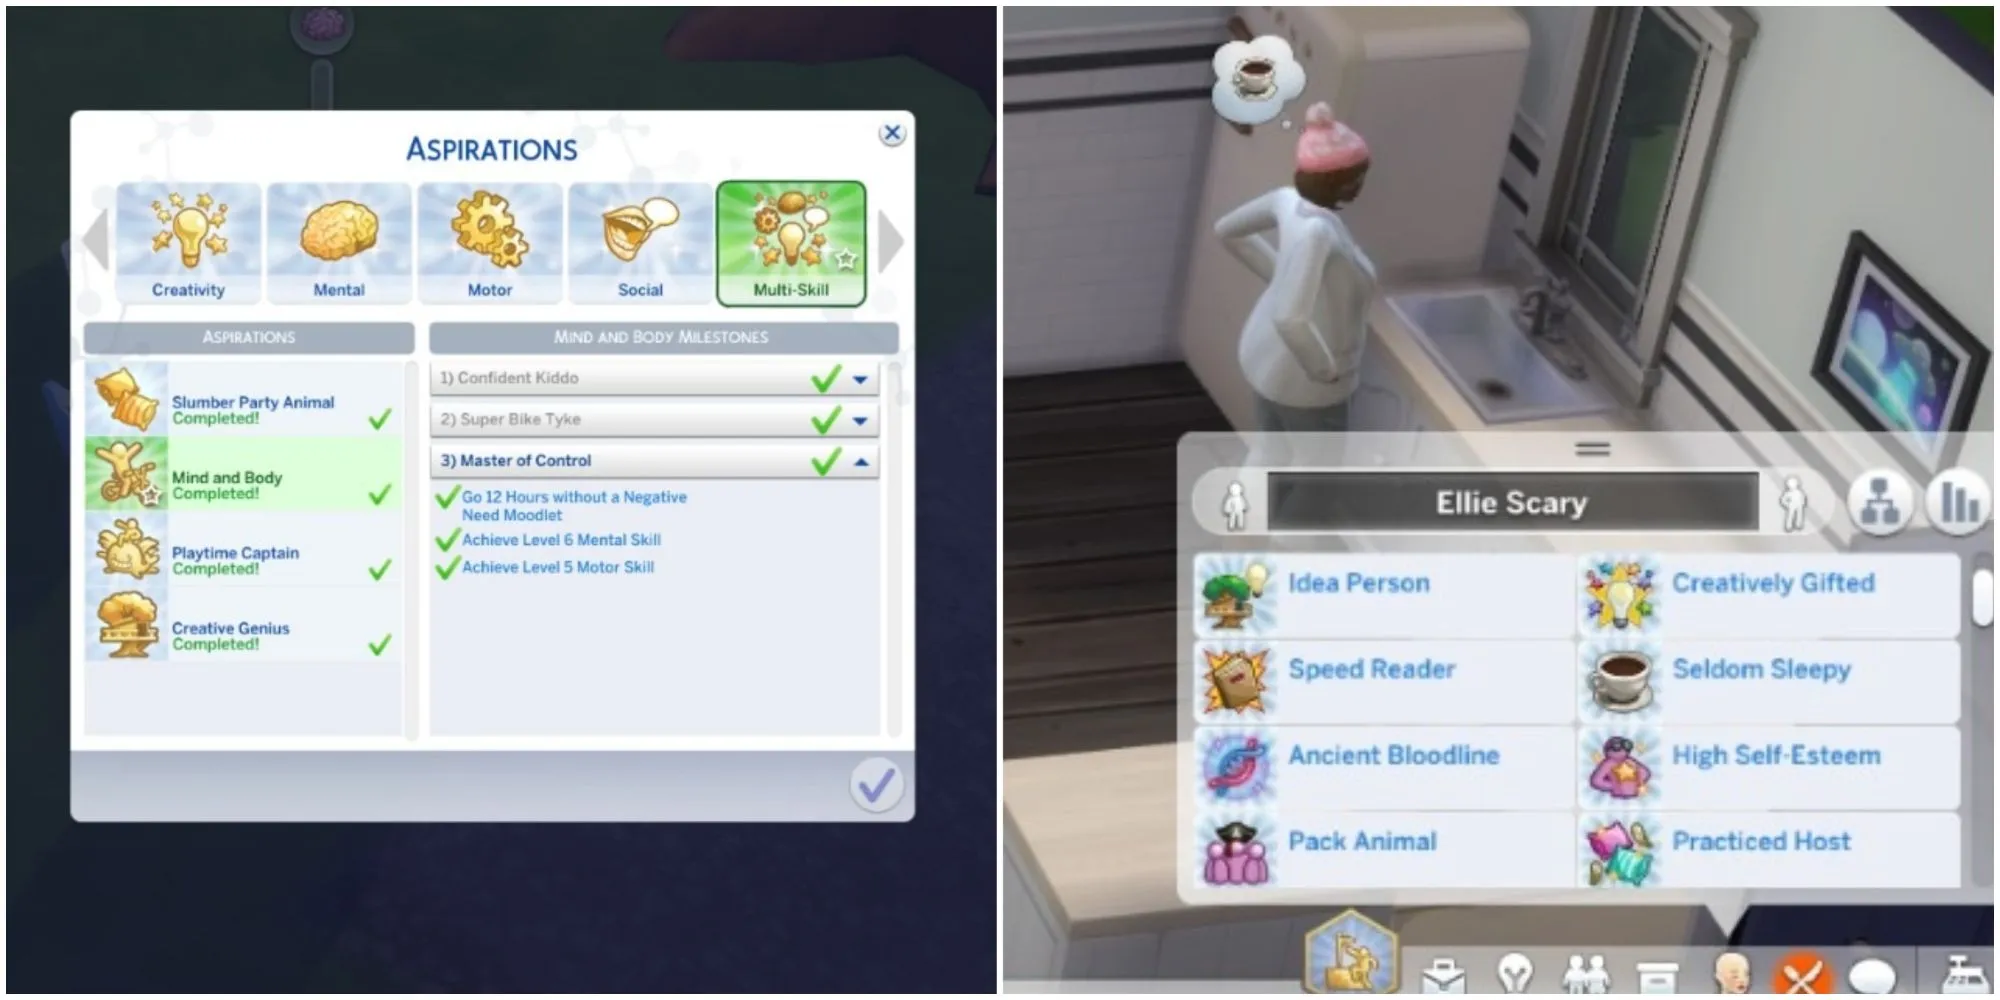 het voltooien van alle ambities voor meerdere taken in de Sims 4 die samen groeien